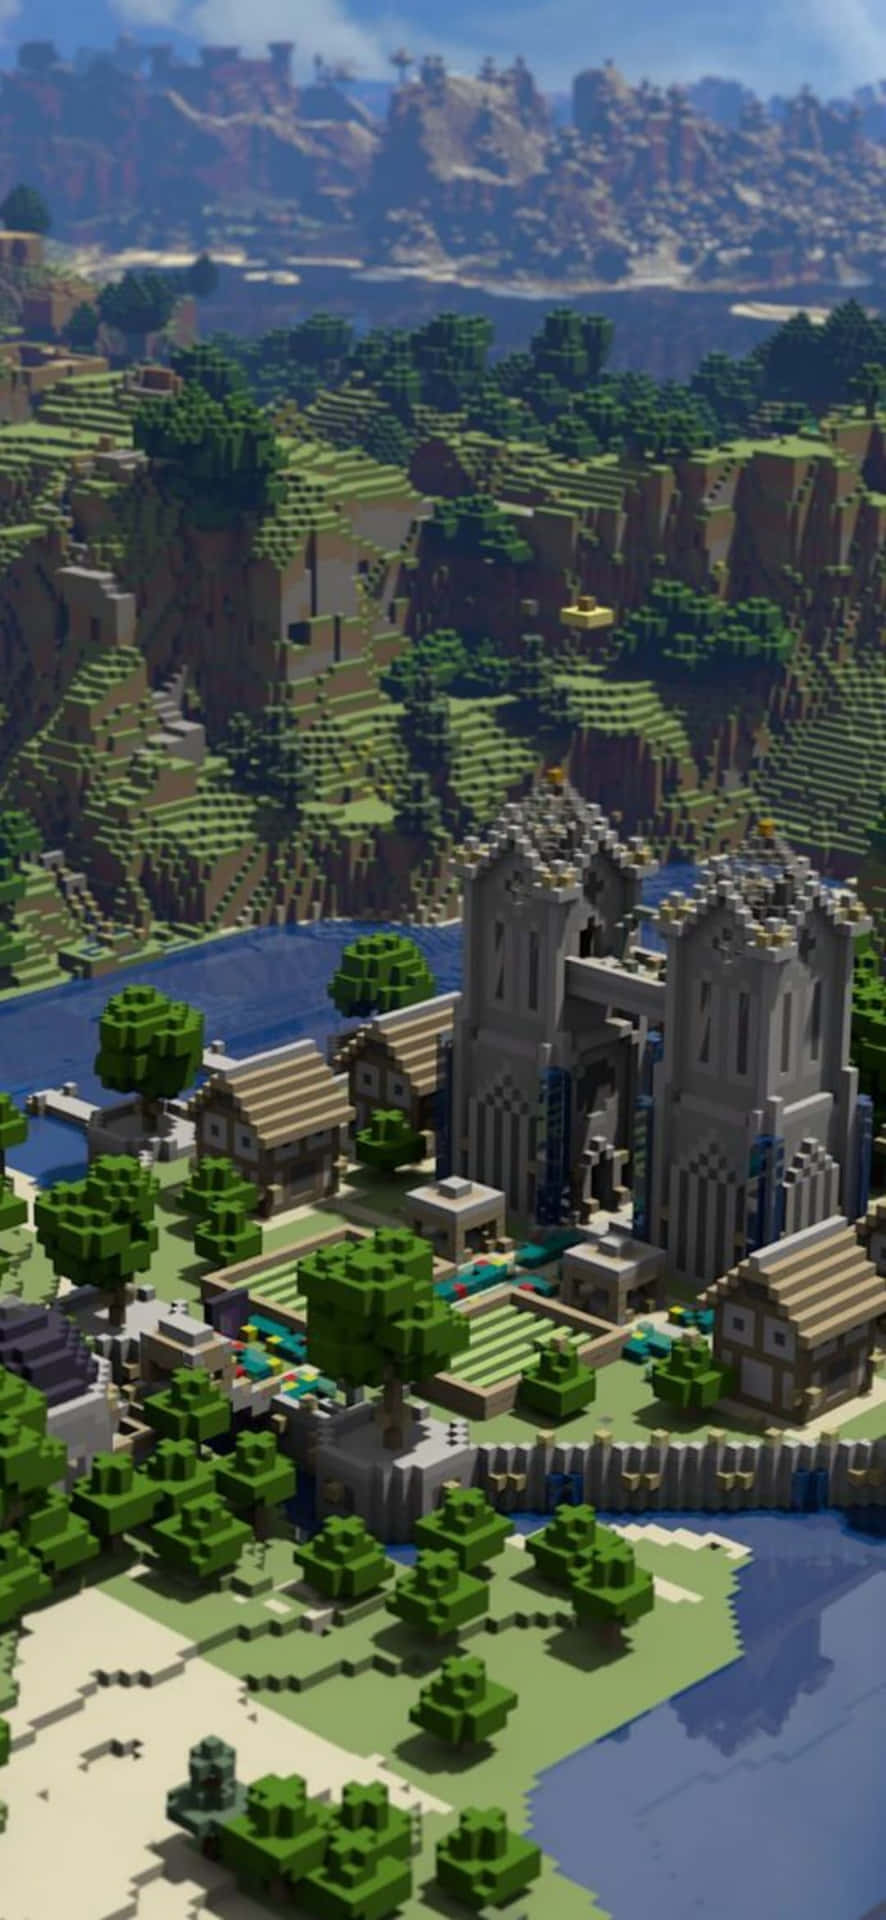 Pixel 3 Minecraft-baggrund: Tag et smukt billede af et slottes udsigt gennem en flod.